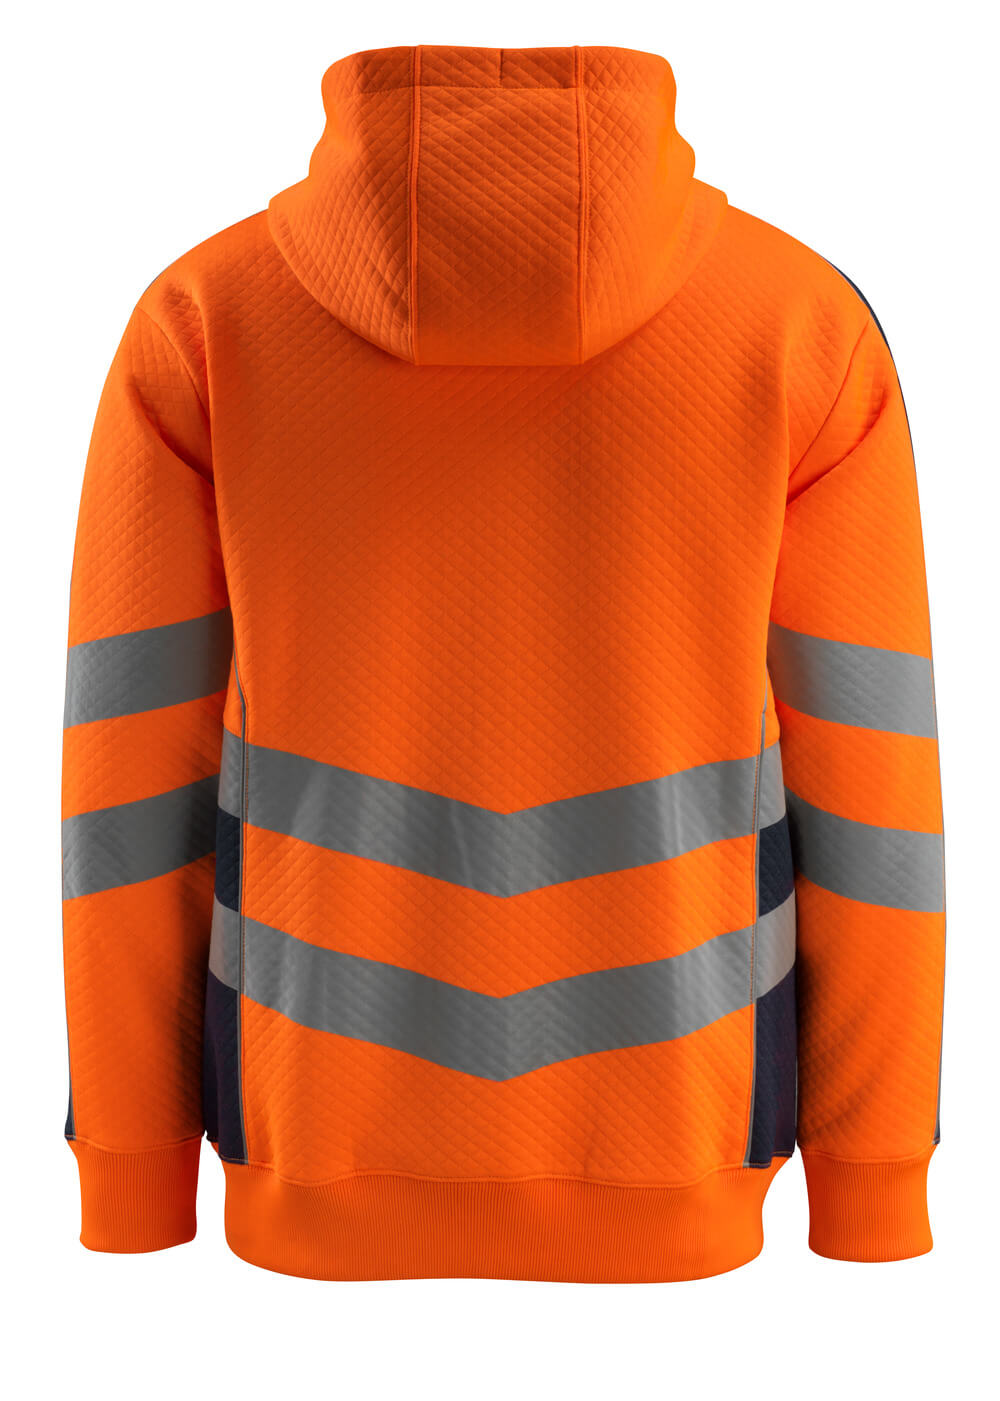 Kapuzensweatshirt mit Rei?verschluss SAFE SUPREME Kapuzensweatshirt mit Rei?verschluss in Farbe Hi-vis Orange/Schwarzblau